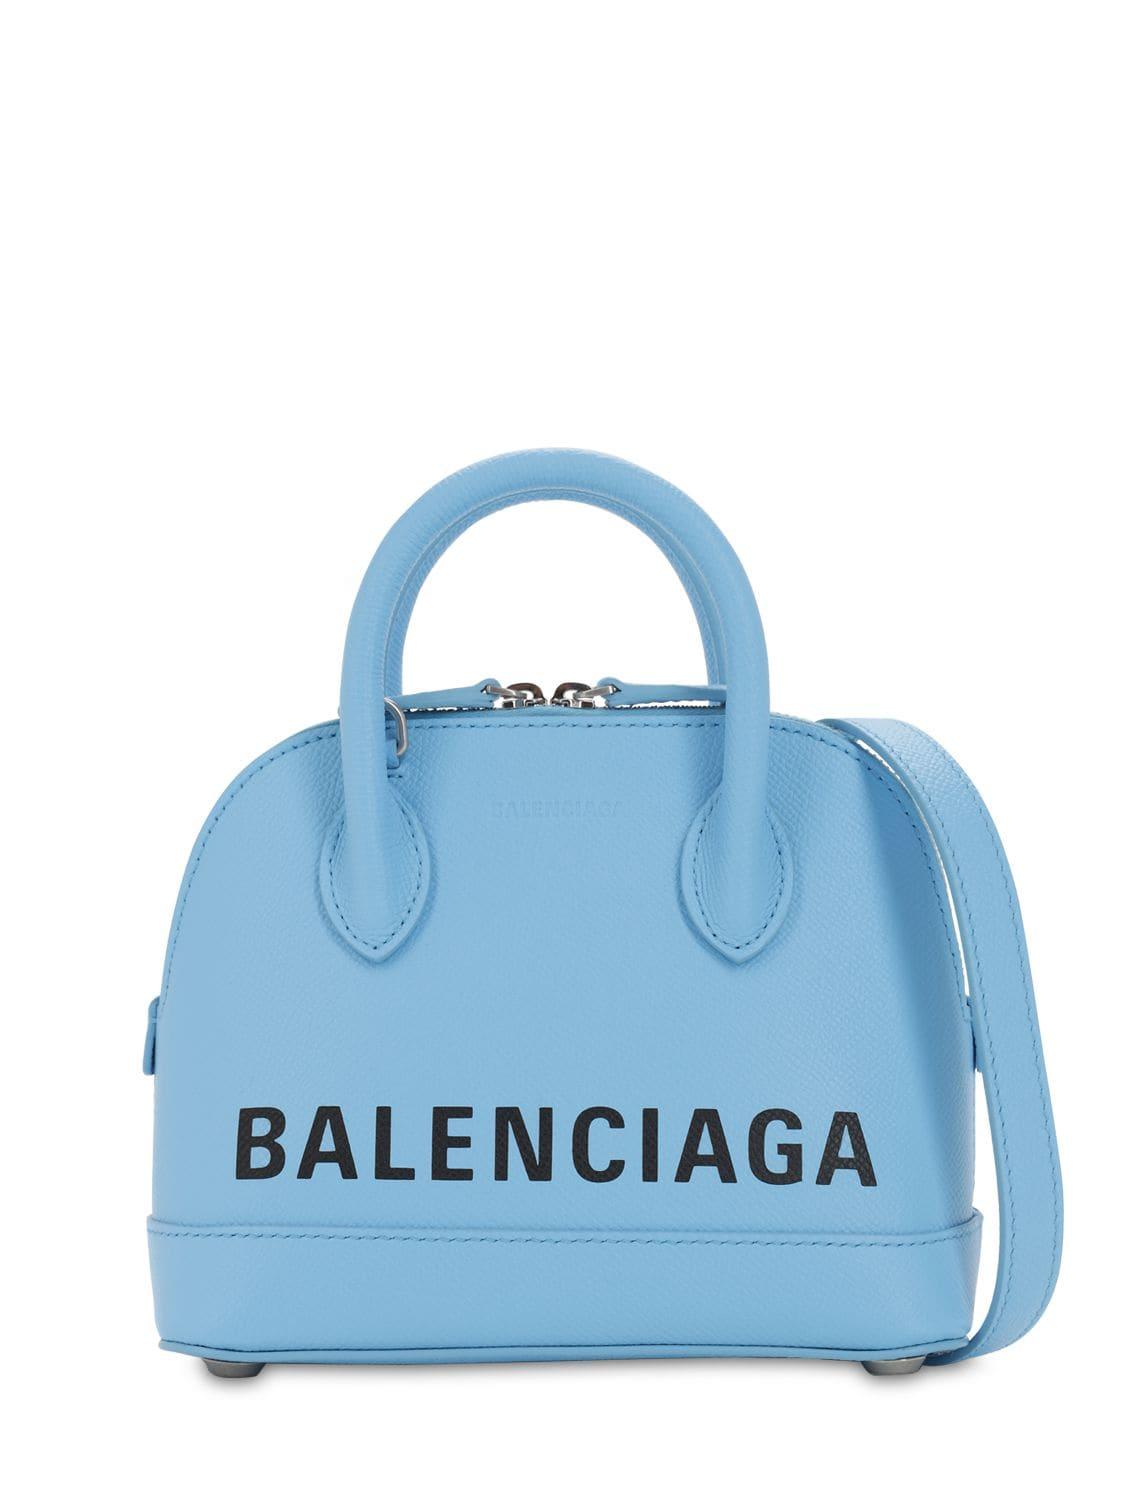 light blue balenciaga bag